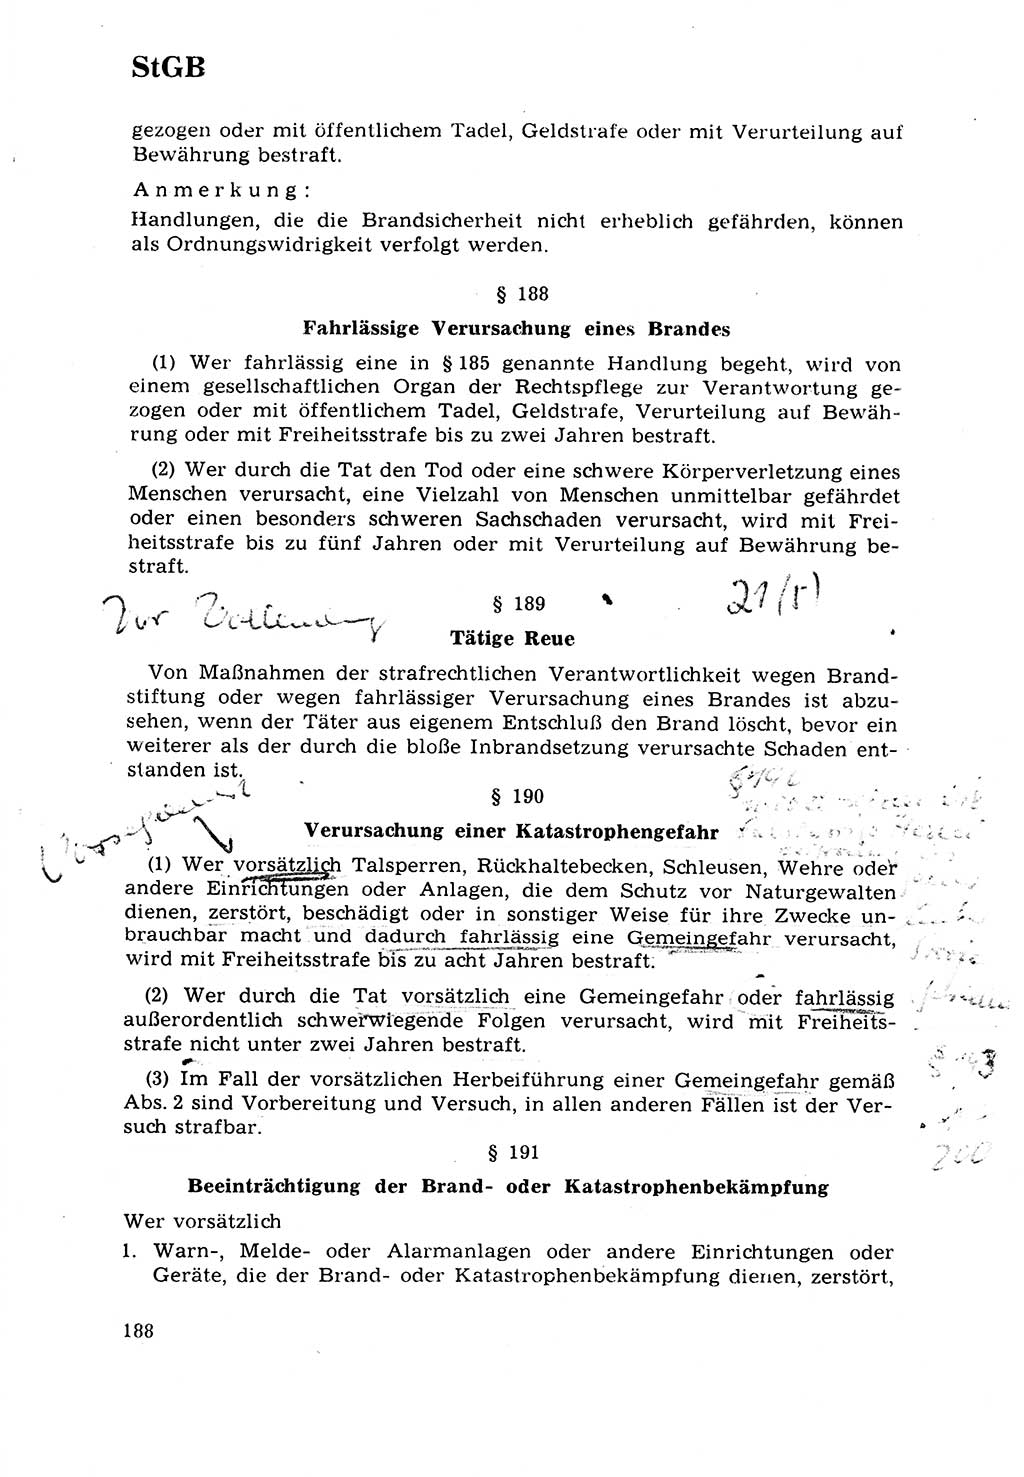 Strafrecht [Deutsche Demokratische Republik (DDR)] 1968, Seite 188 (Strafr. DDR 1968, S. 188)